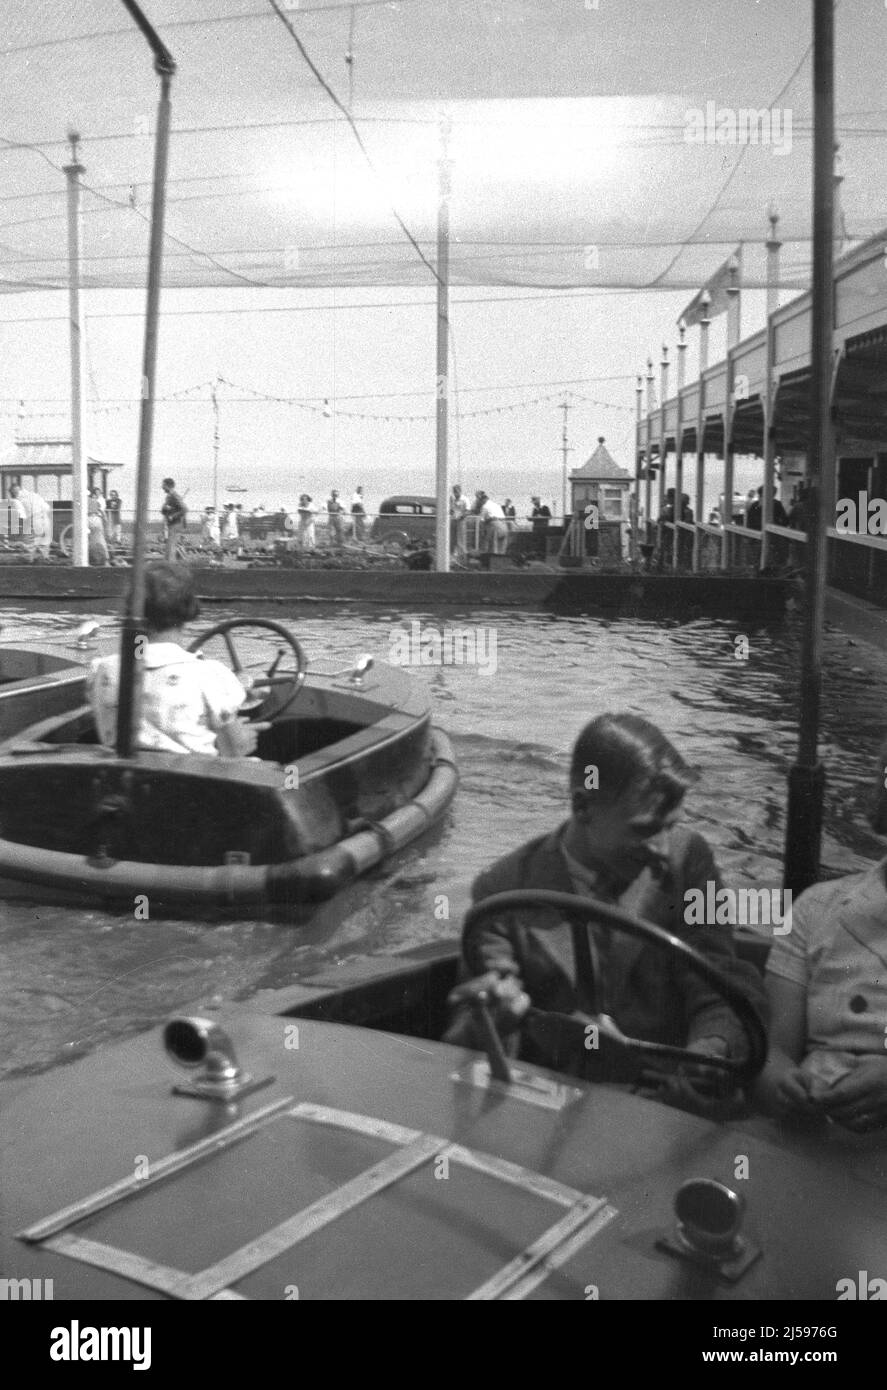 1950s, historique, vacanciers s'amusant dans les petits bateaux en bois sur la piscine de bateau à la célèbre plage Dreamland plaisir Park à Margate, Kent, Angleterre, Royaume-Uni. Banque D'Images